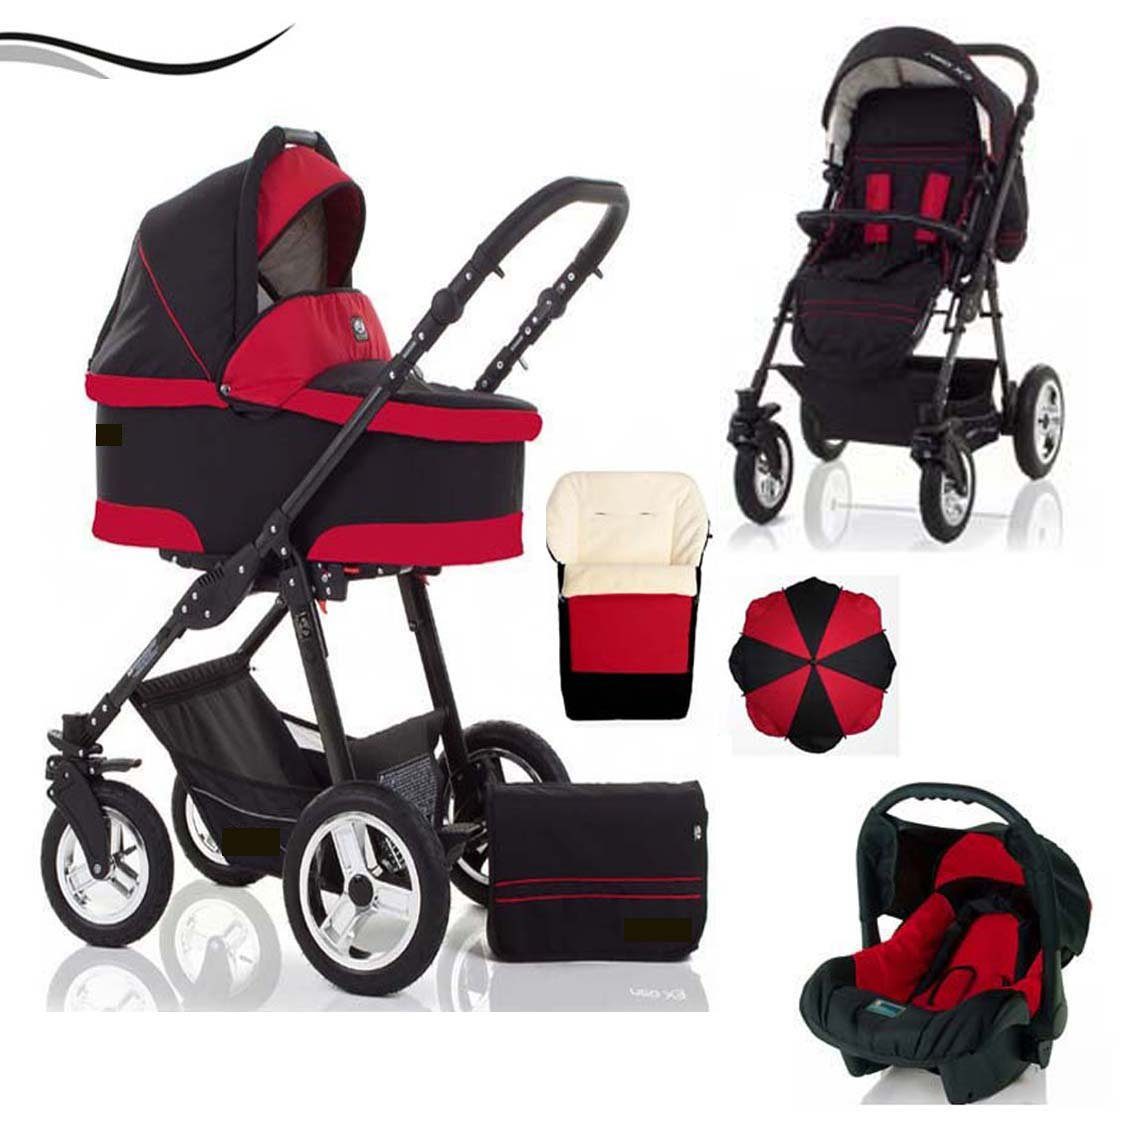 babies-on-wheels Kombi-Kinderwagen City Star 5 in 1 inkl. Autositz, Sonnenschirm und Fußsack - 18 Teile - von Geburt bis 4 Jahre in 16 Farben Schwarz-Rot